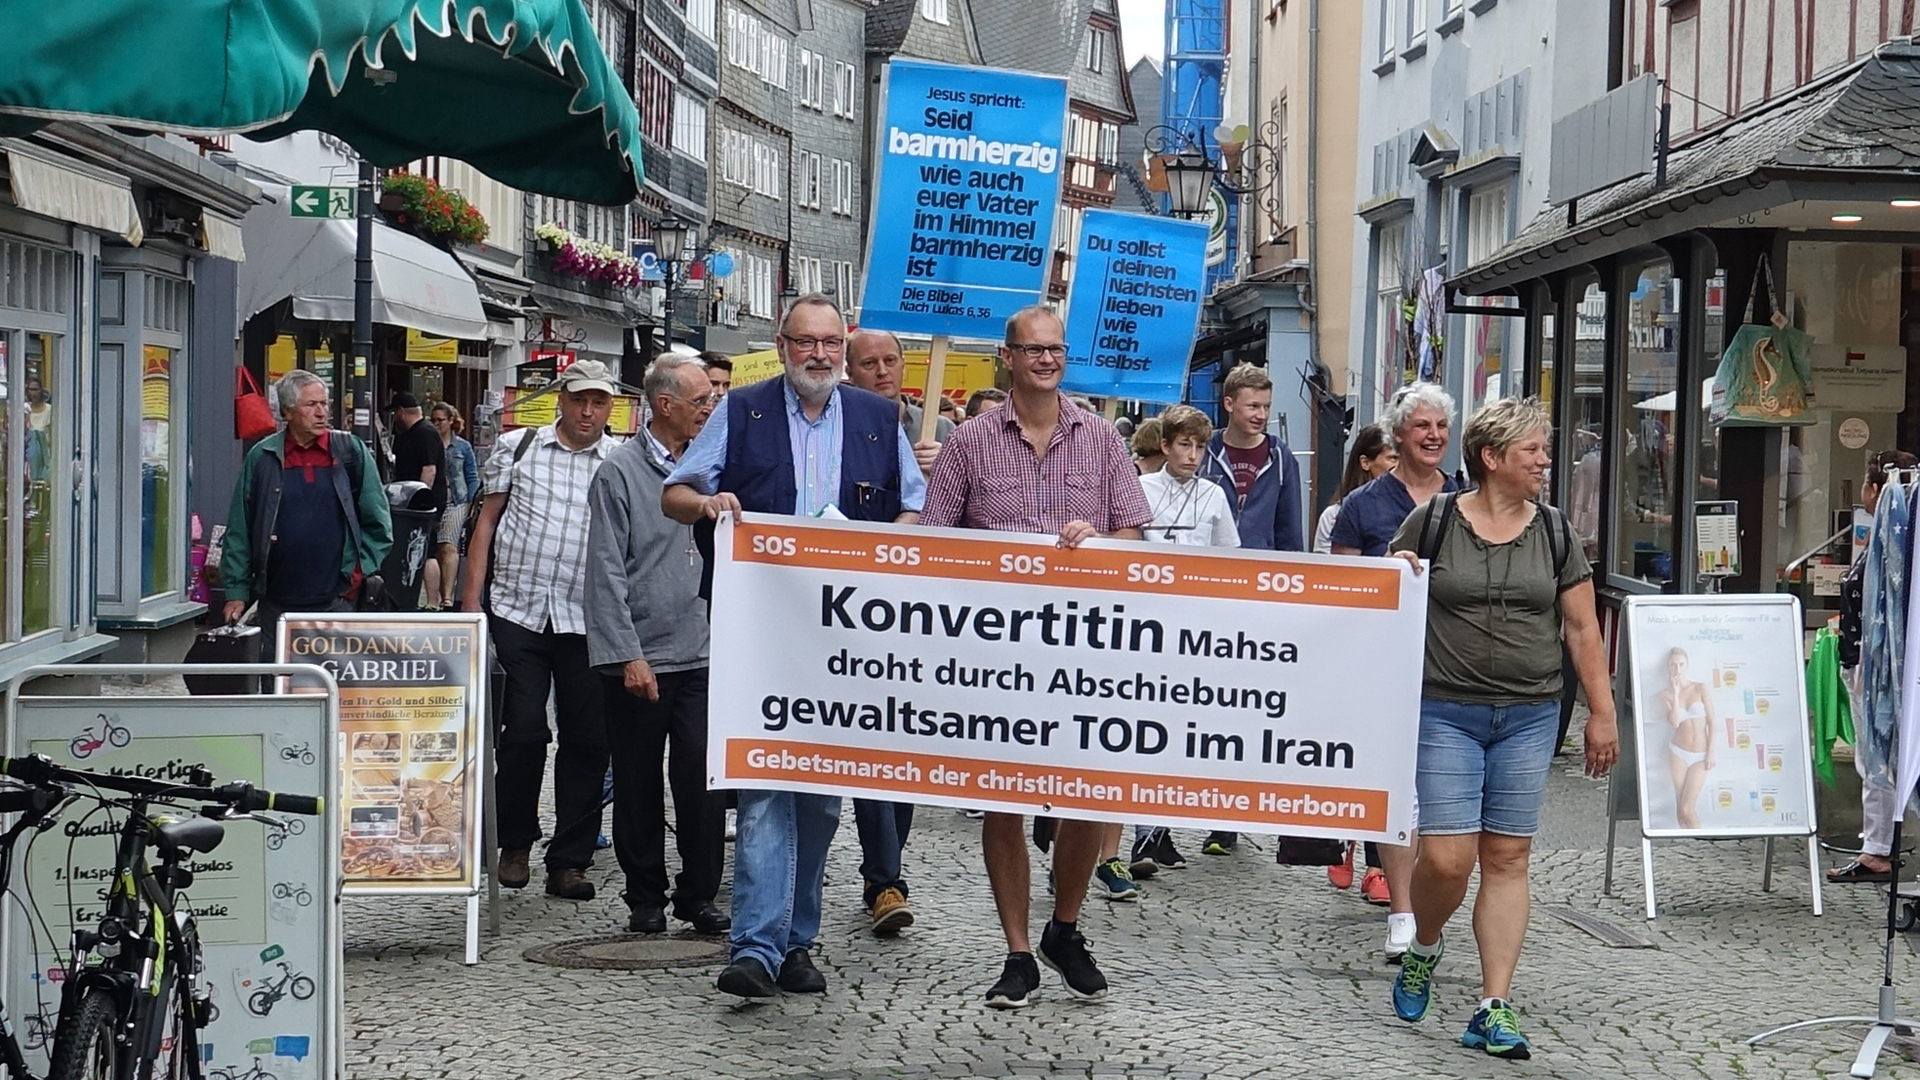 Christen demonstrieren in Herborn gegen die Abschiebung der Konvertitin Mahsa